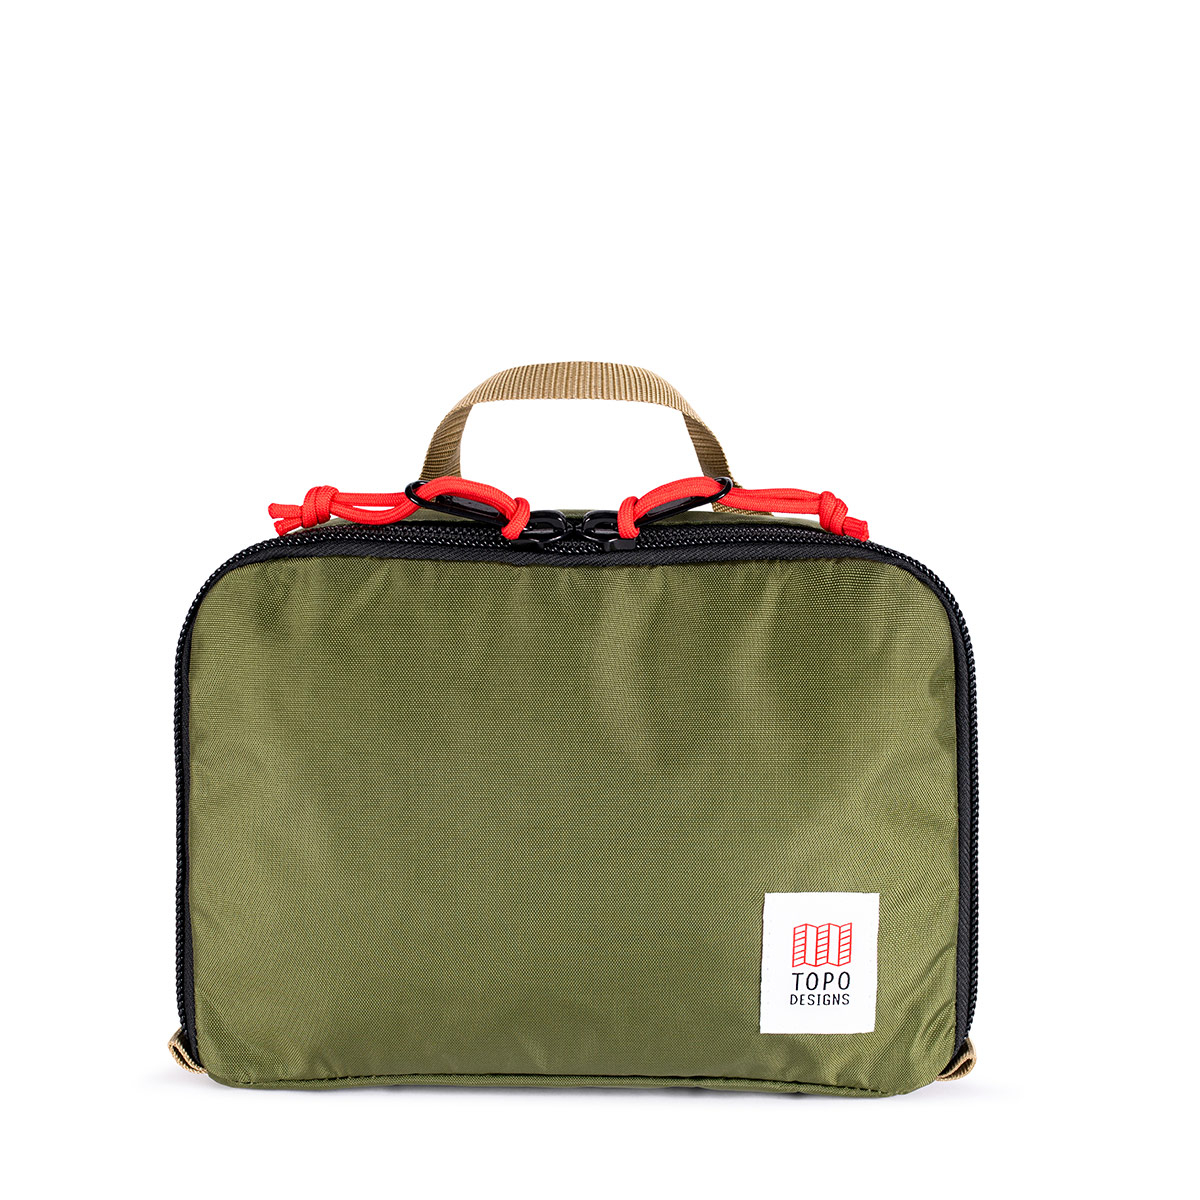 Topo Designs Pack Bag 5L Olive, die Optimierung Ihres Gepäcks war noch nie einfacher